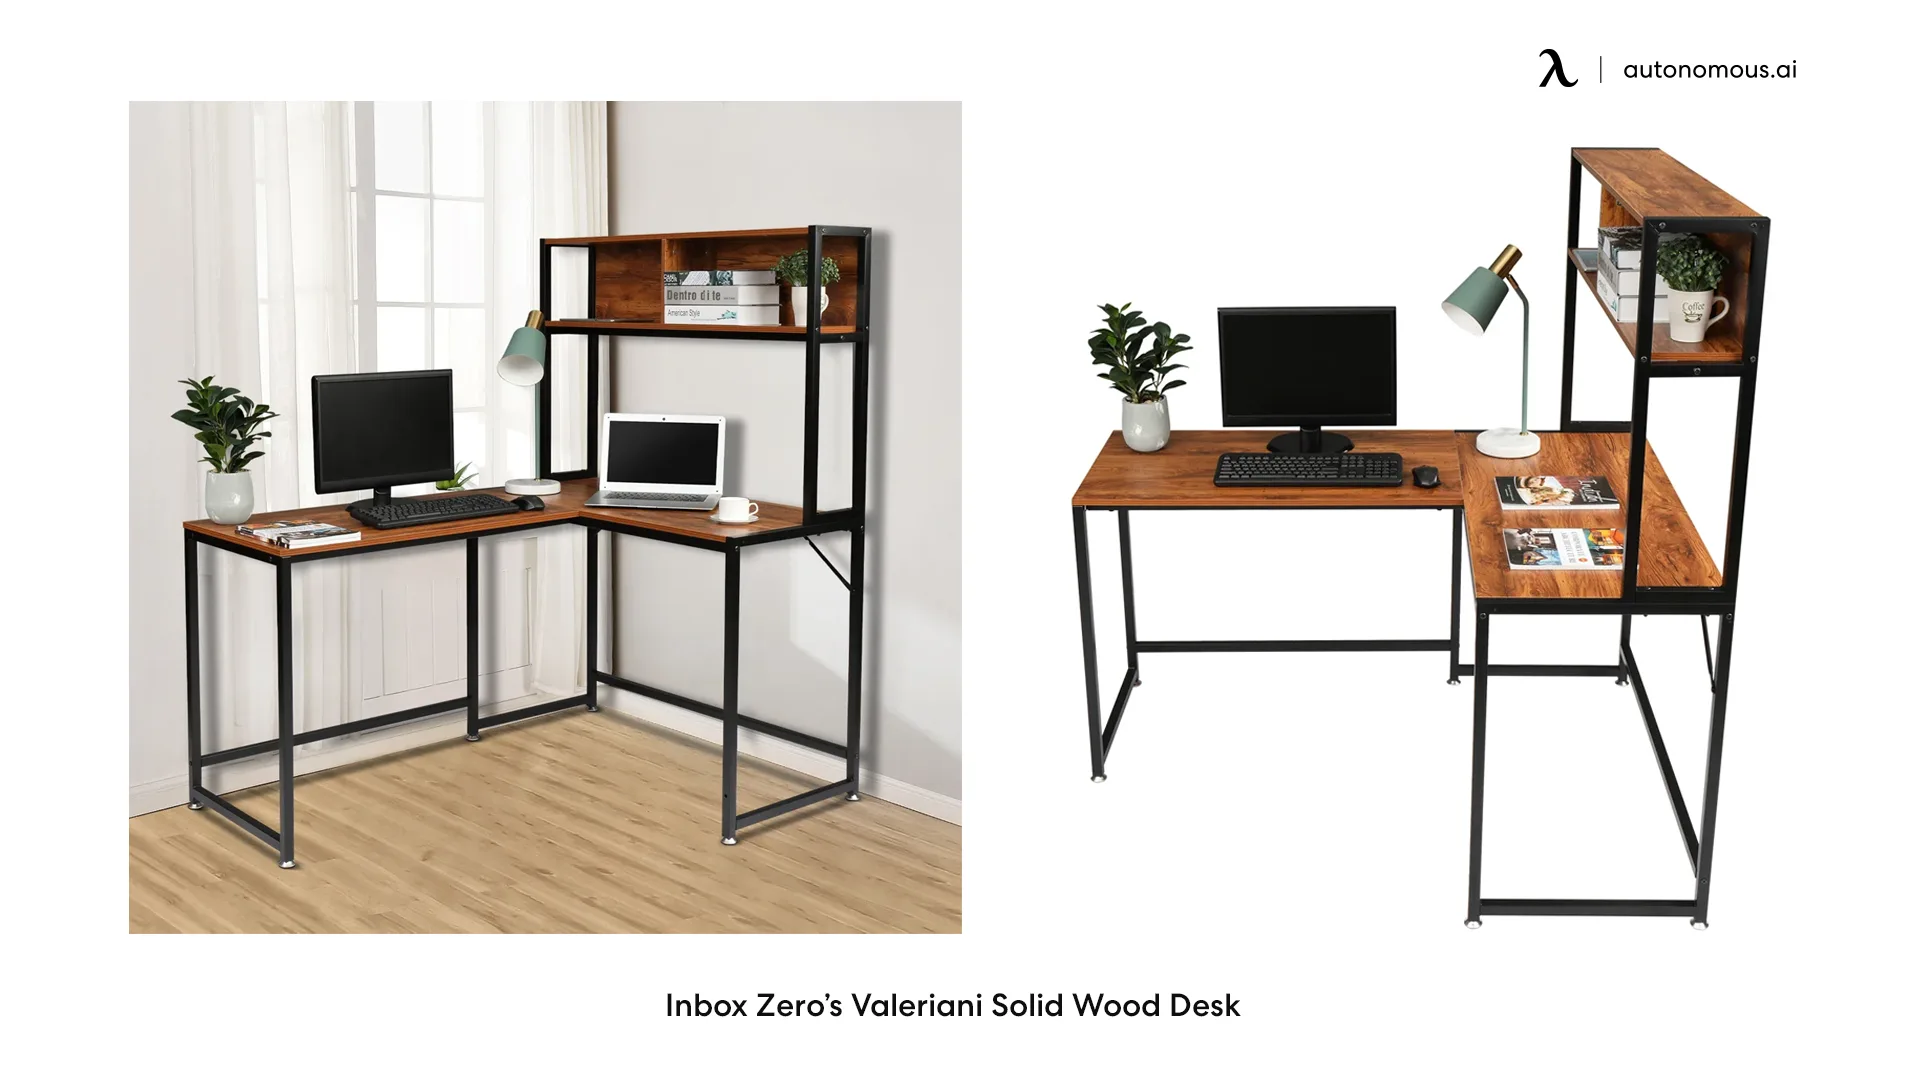 Inbox Zero’s Valeriani Solid Wood Desk